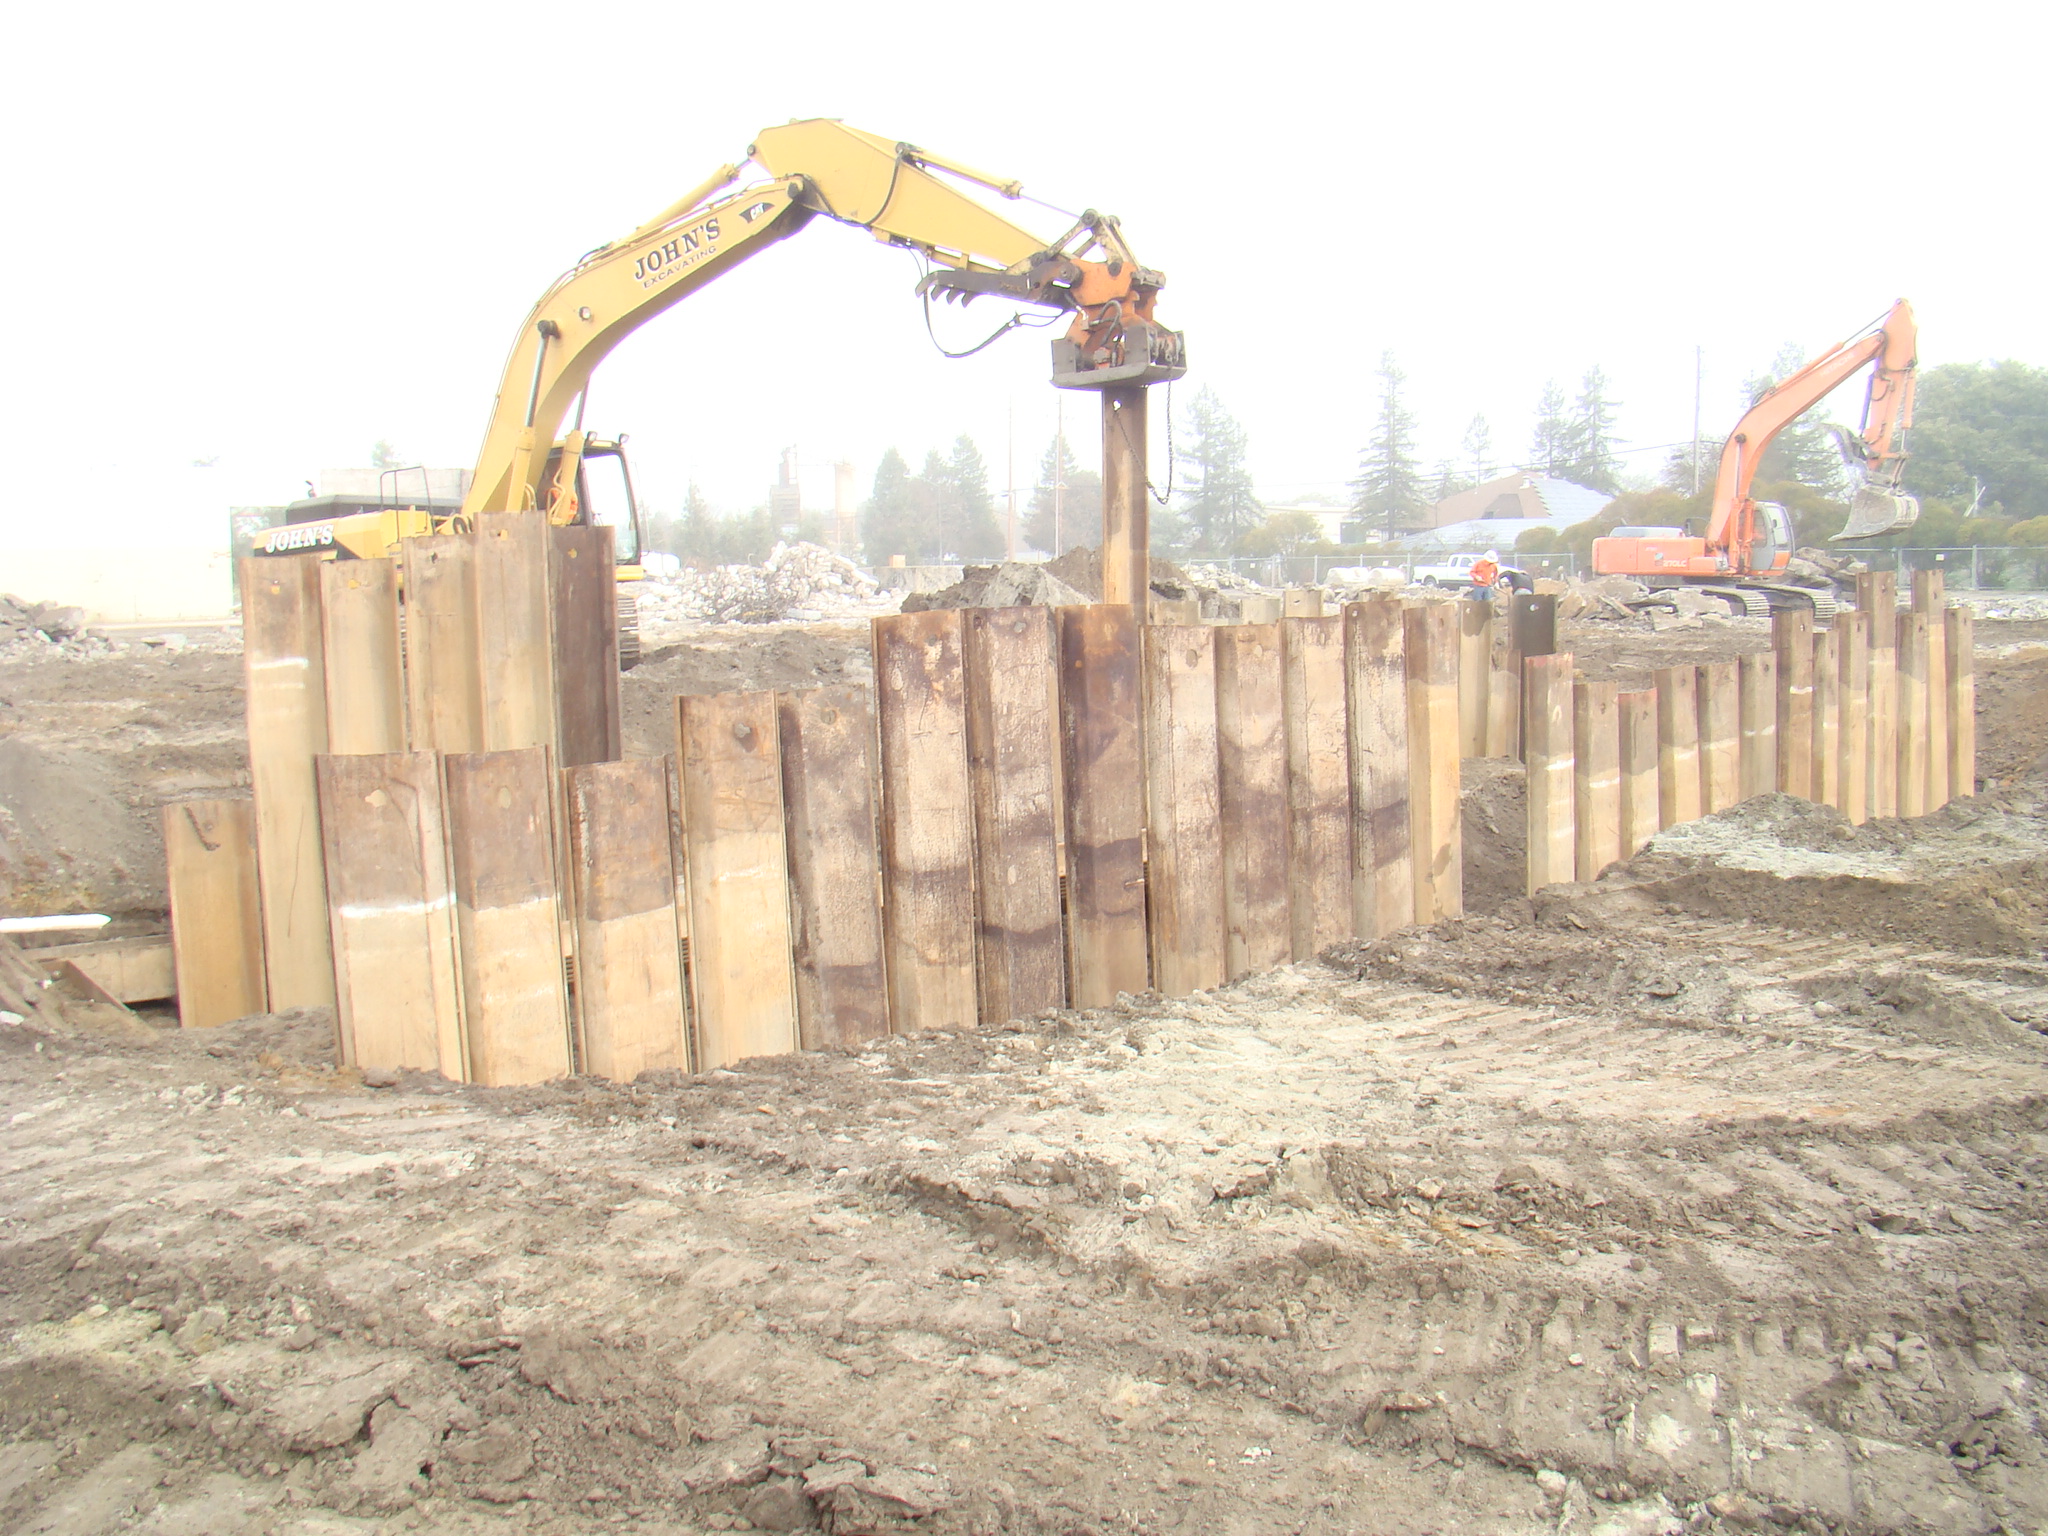 excavator placing large metal beams vertically in ground